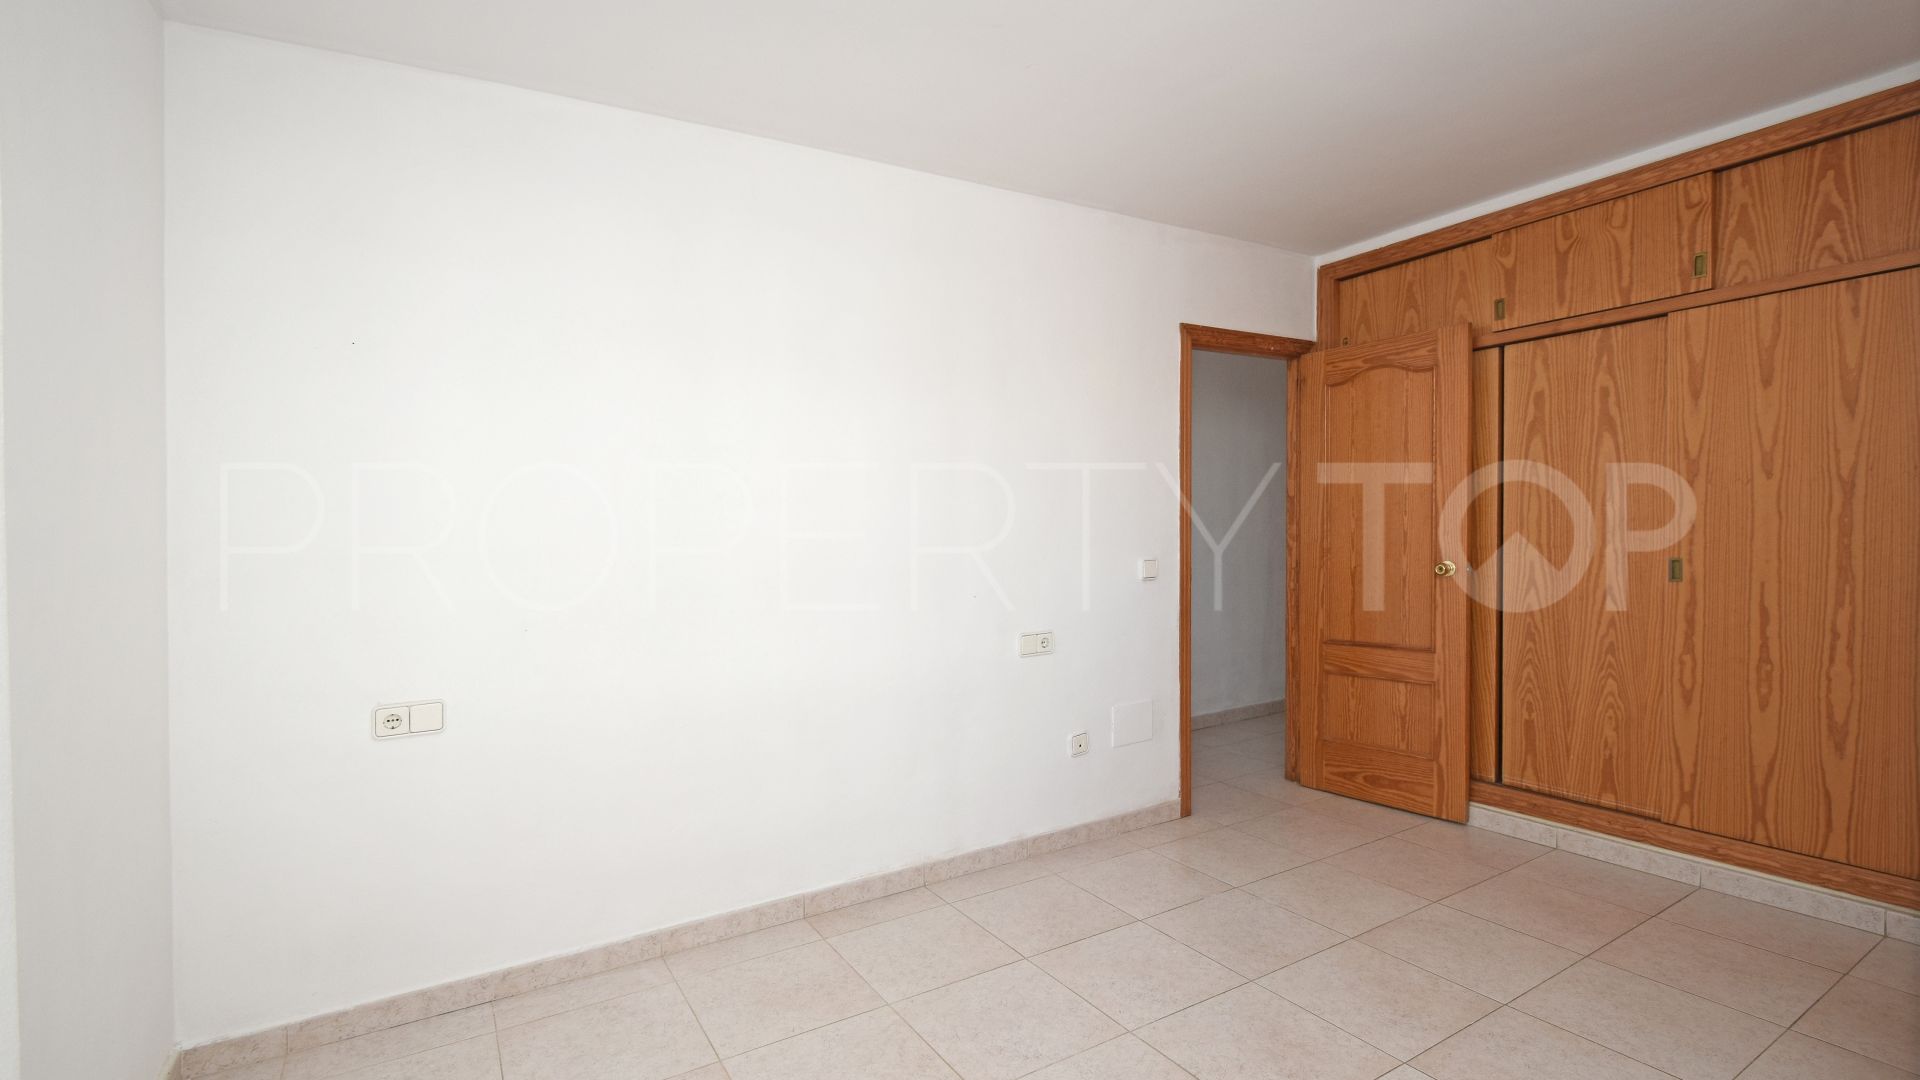 For sale apartment in Santa Eulalia del Río